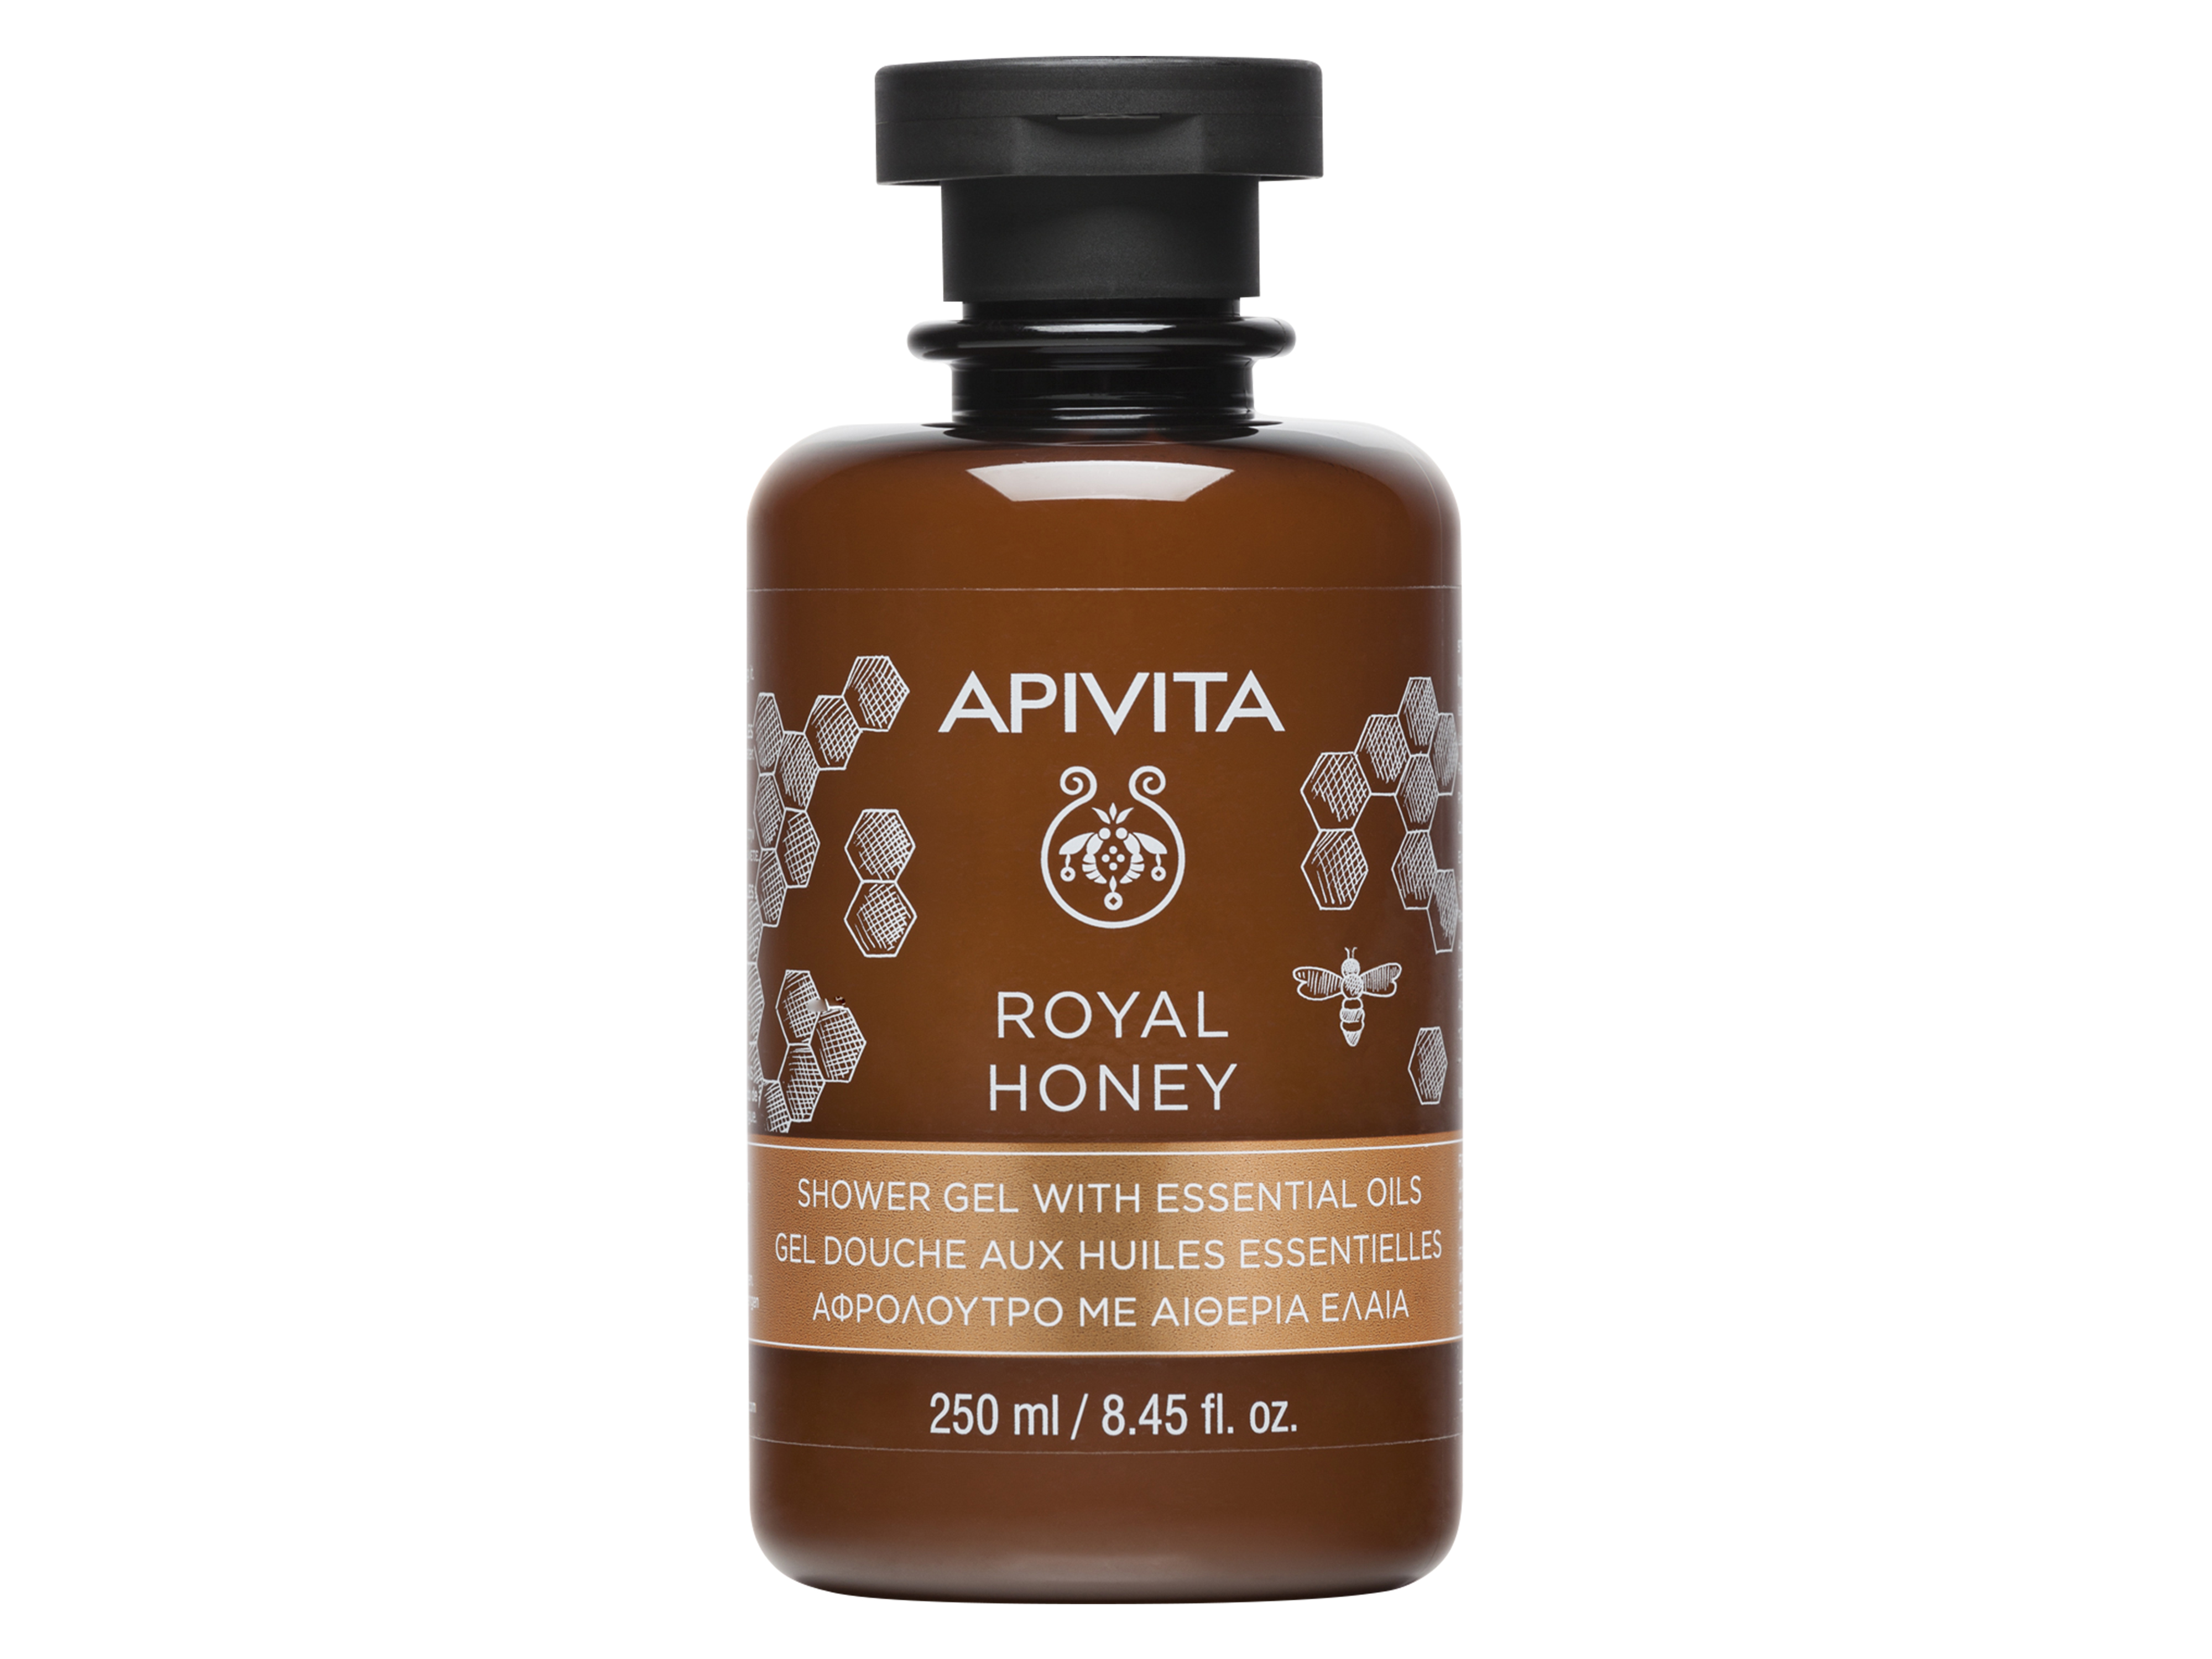 Apivita Royal Honey Shower Gel, 250 ml